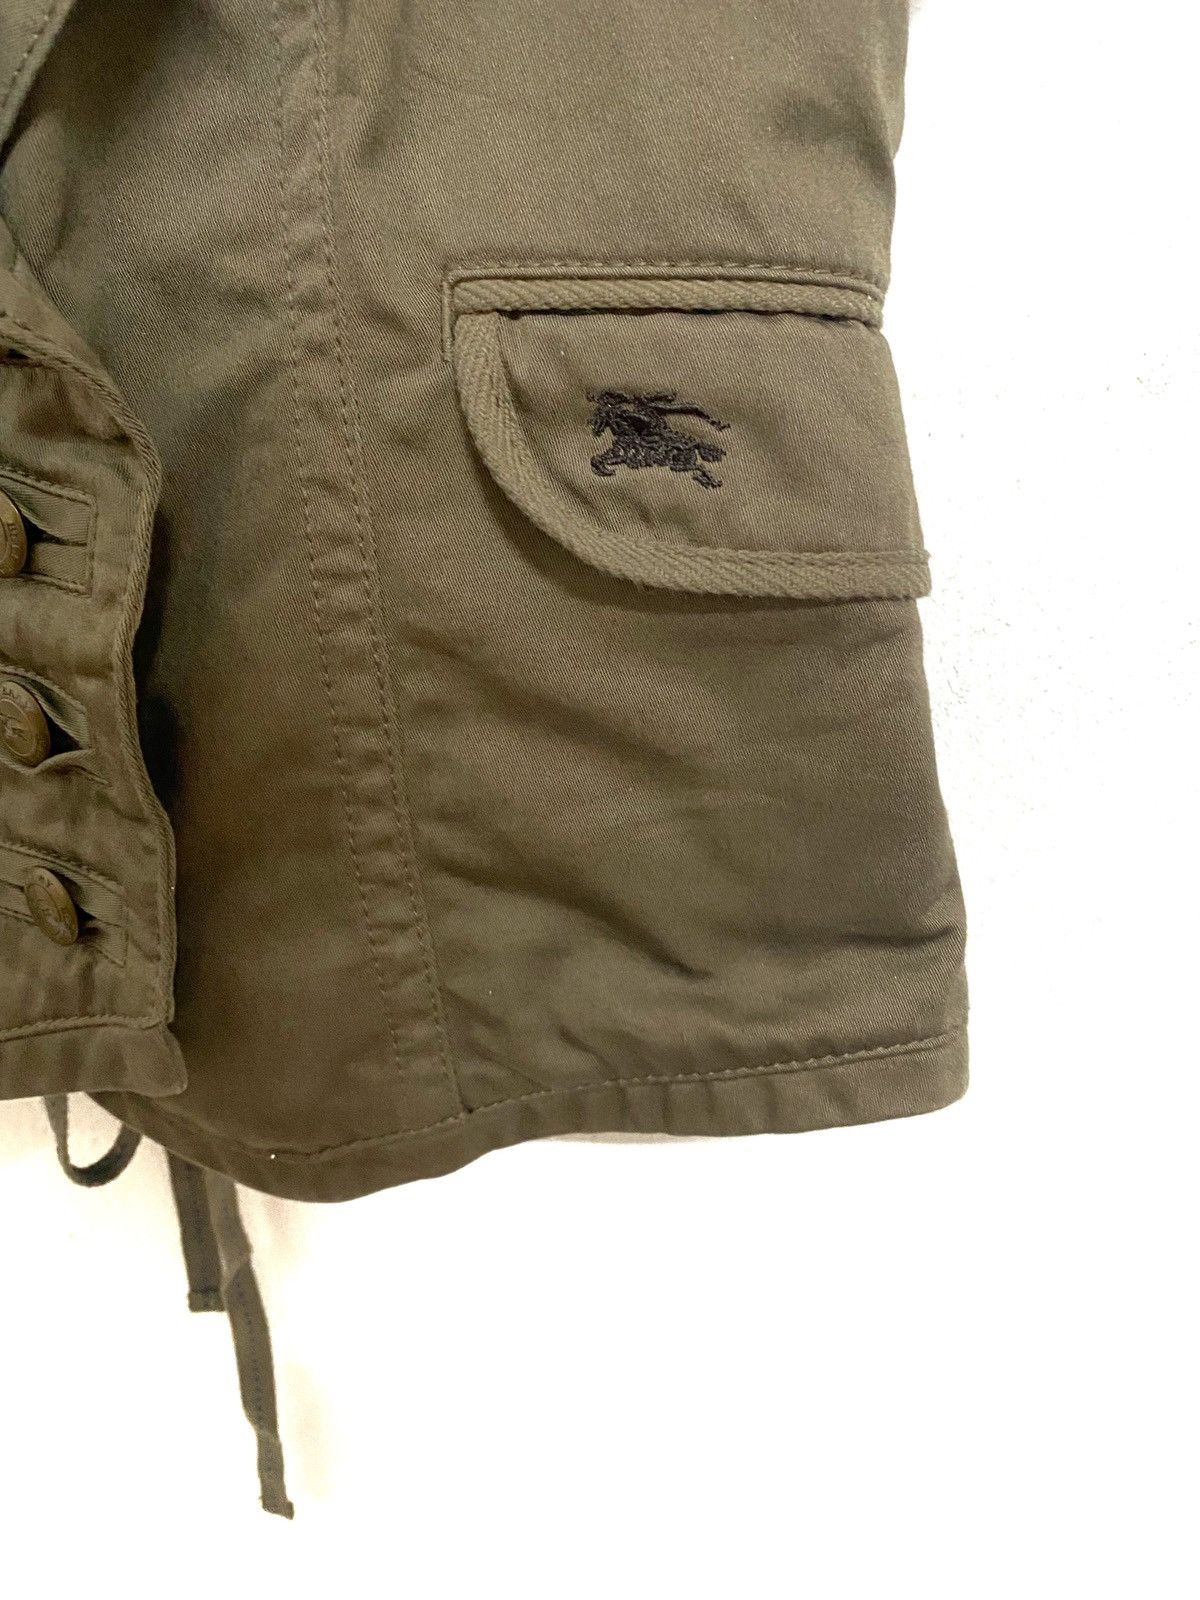 Burberry Blue Label Nova Check Vest Jacket Size 38 - 5